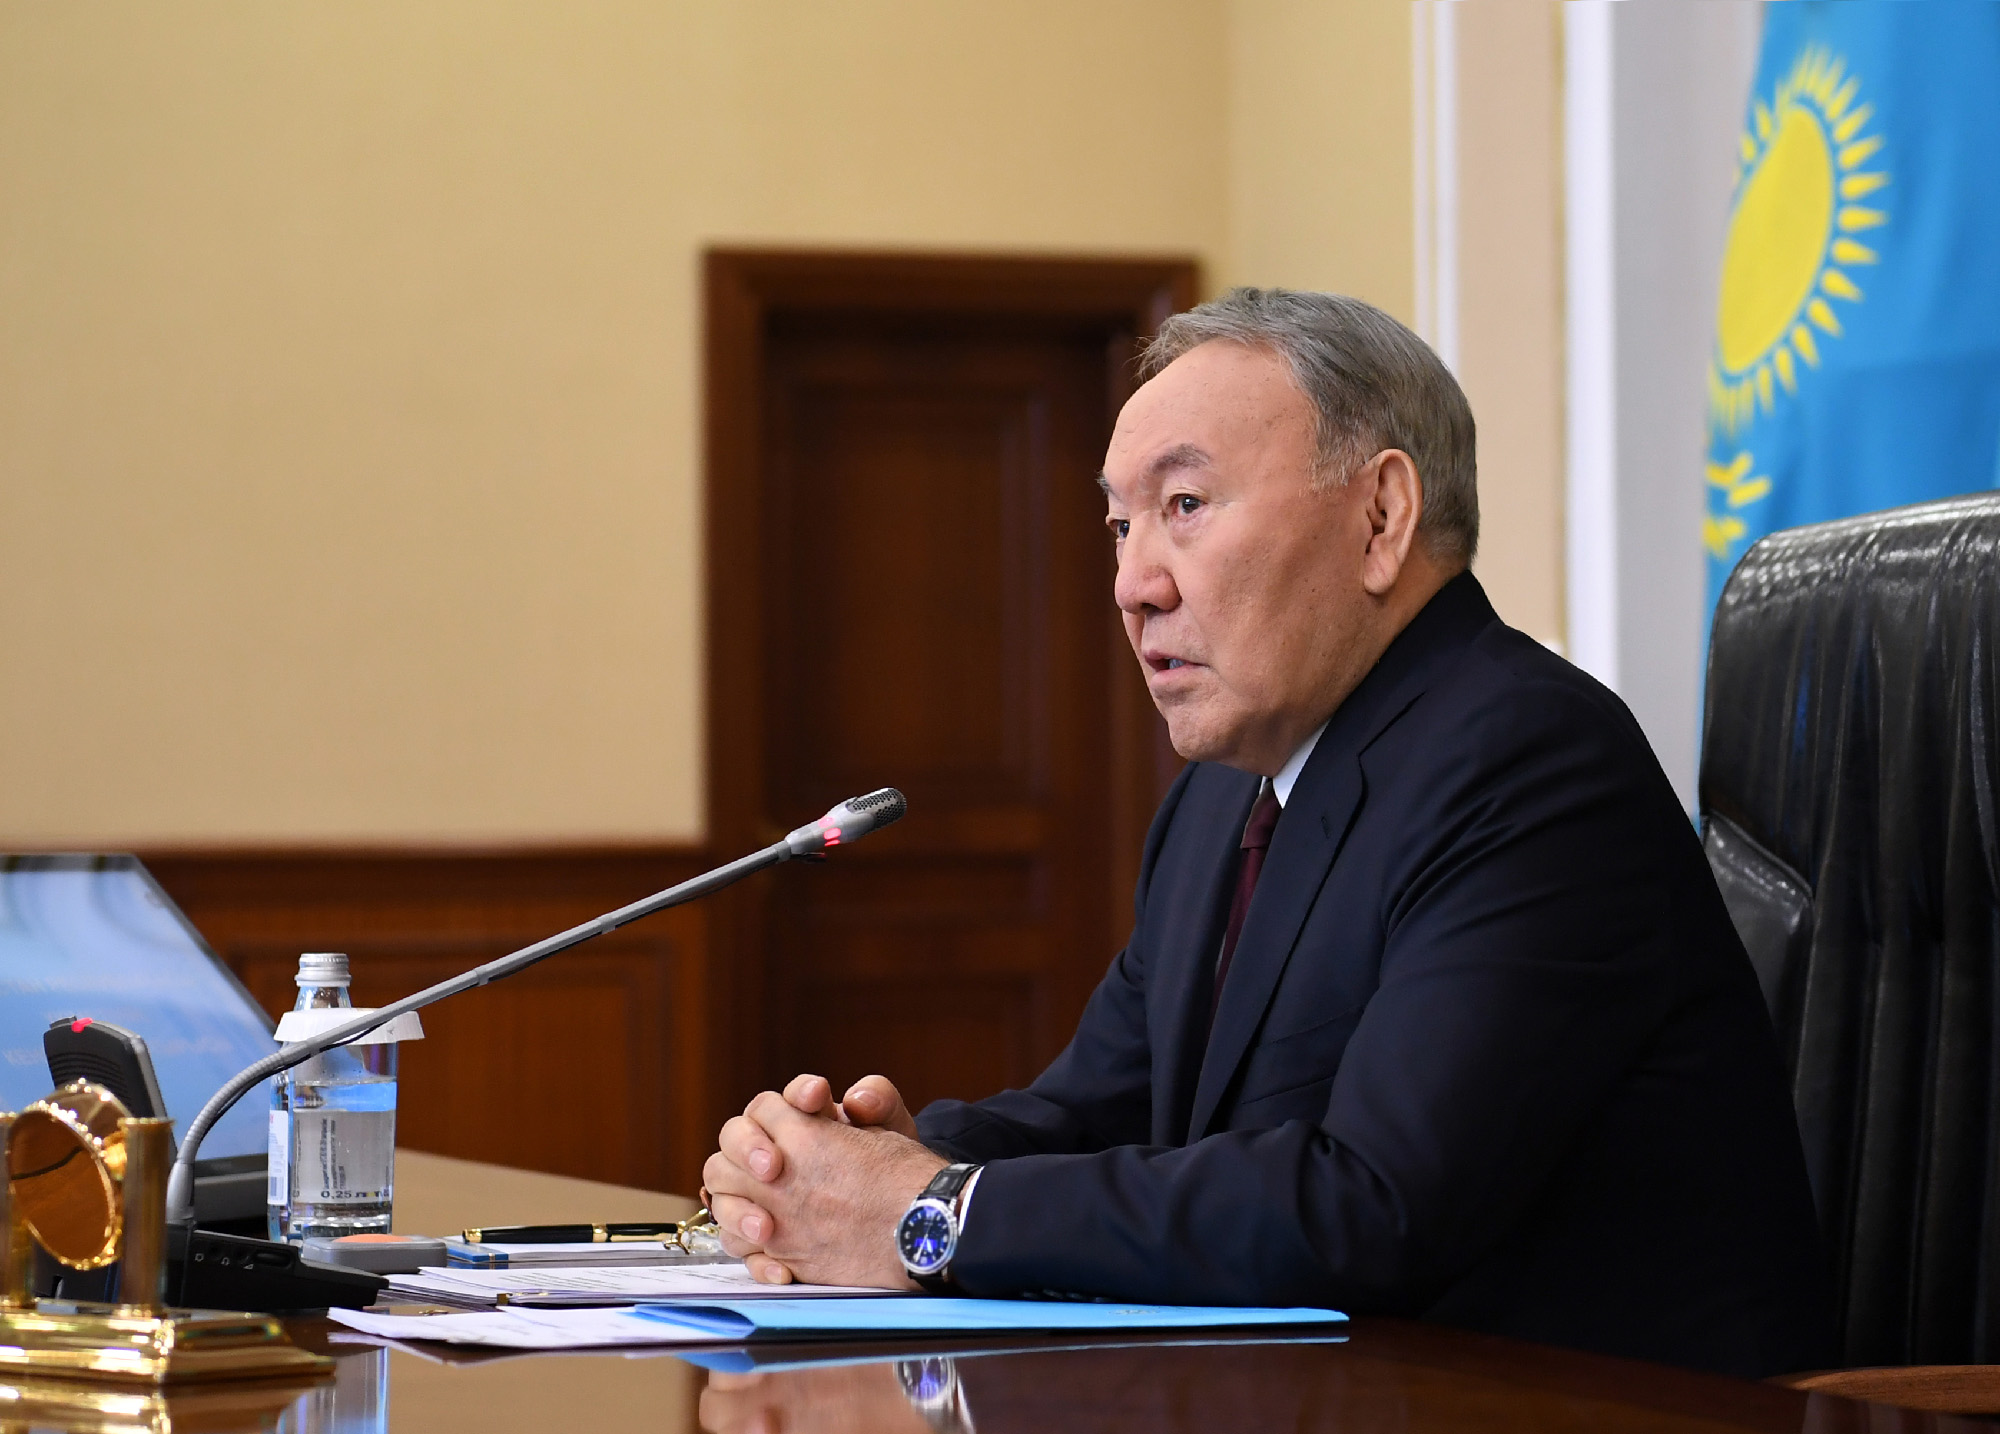 Нурсултан Назарбаев: Всем нужно активизироваться и работать сплочённо